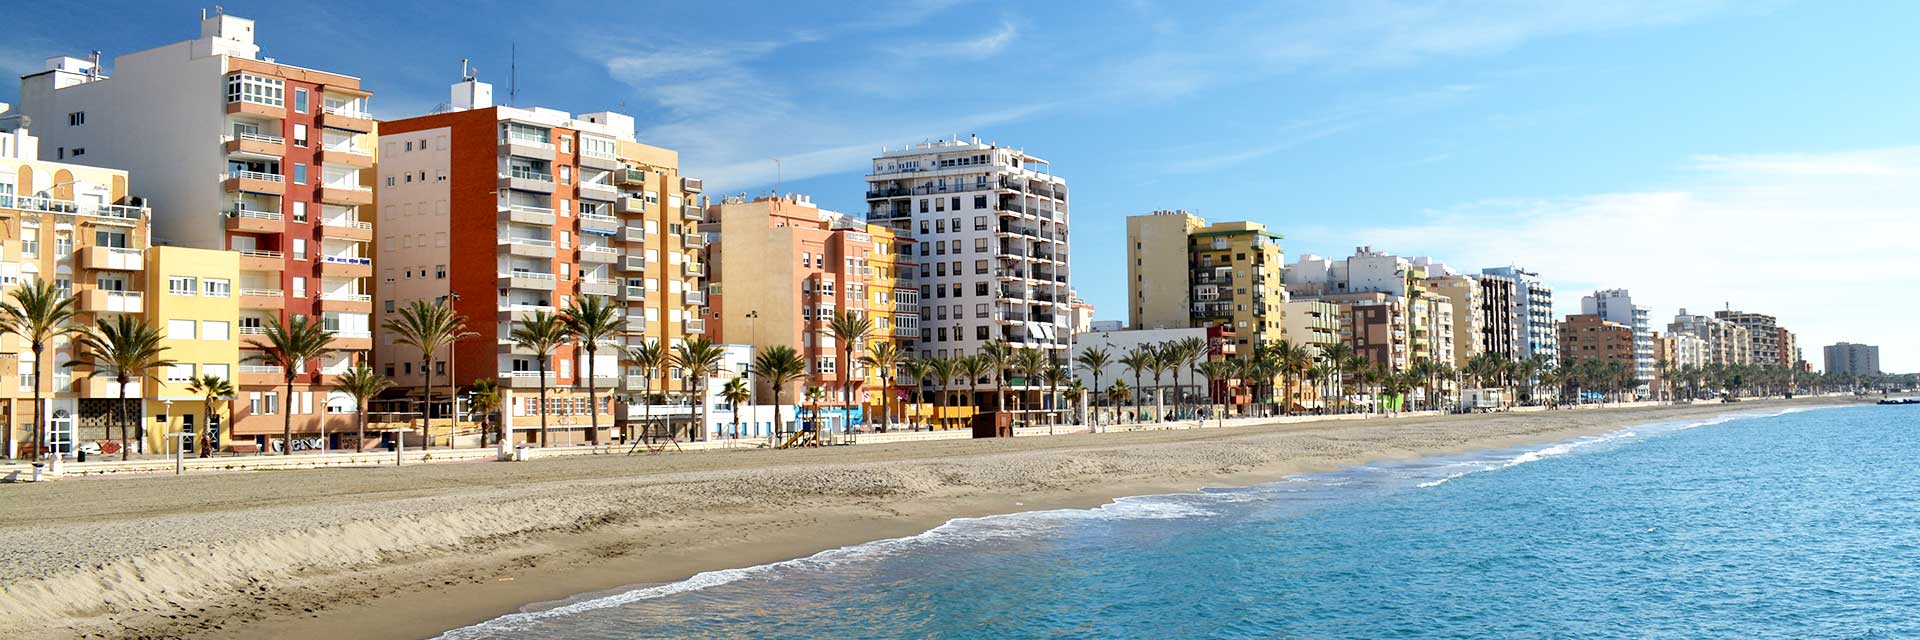 Playas en Almería Capital【 Guía de la Costa de Almería】